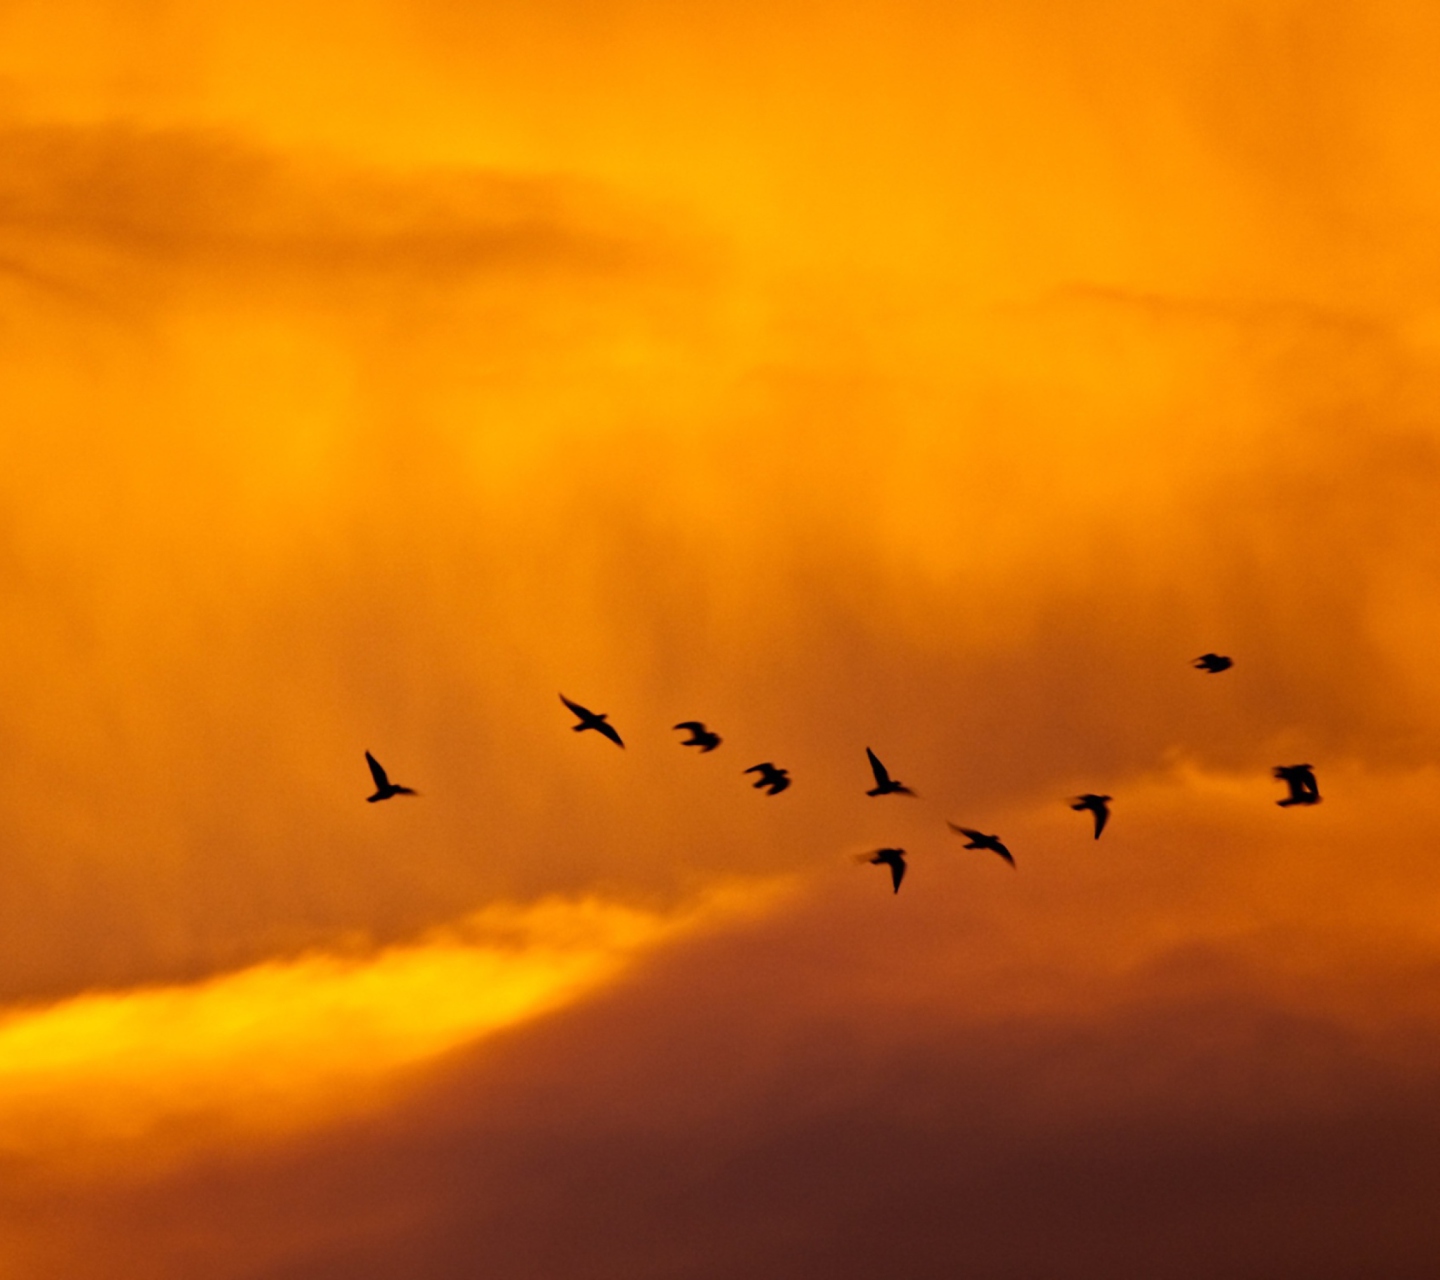 Обои Orange Sky And Birds 1440x1280